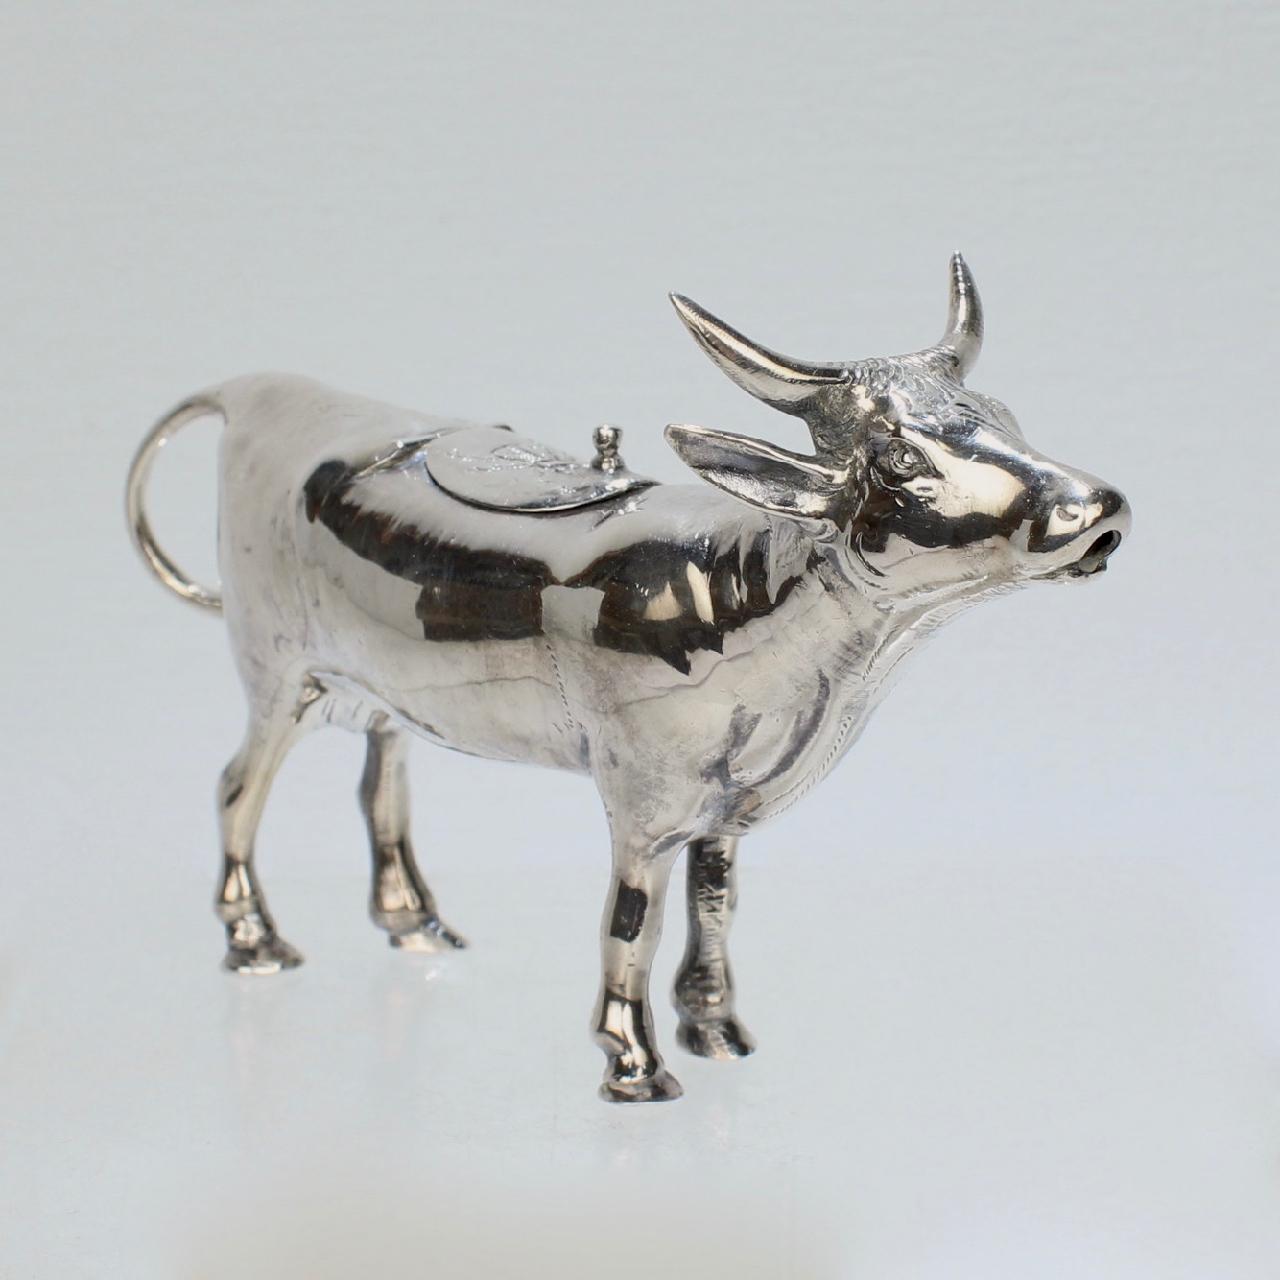 Un très beau crémier ou pot à lait figuratif en argent sterling par Israel Freeman & Son.

En forme de vache, avec une poignée en forme de queue, un couvercle à charnière à l'arrière et un bec verseur à l'embouchure.

Un crémier vraiment